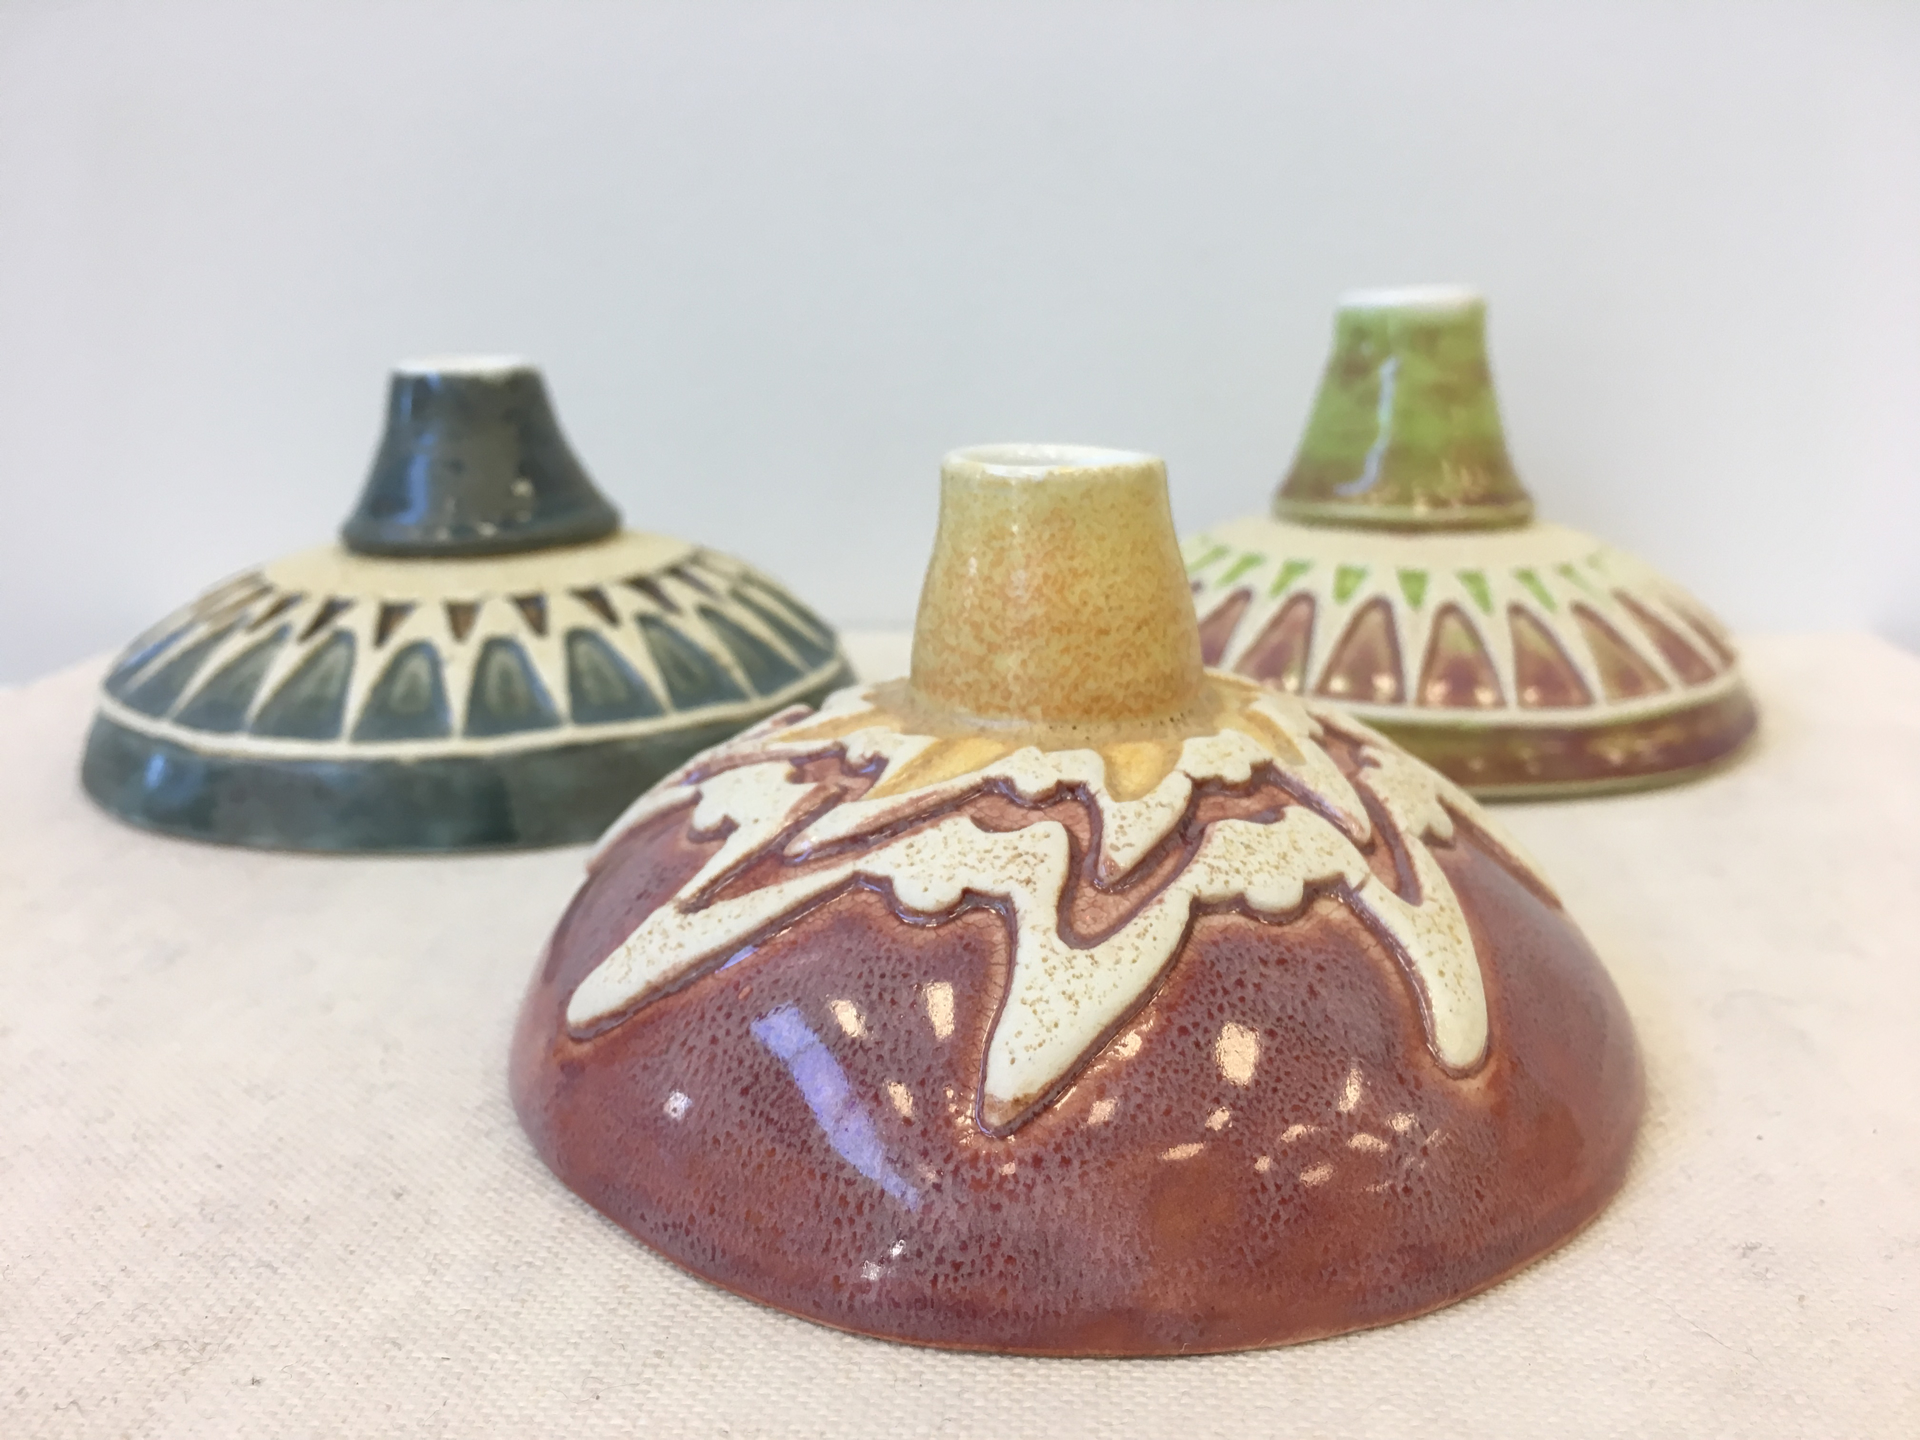 Medium Vase by Lisa Lockman